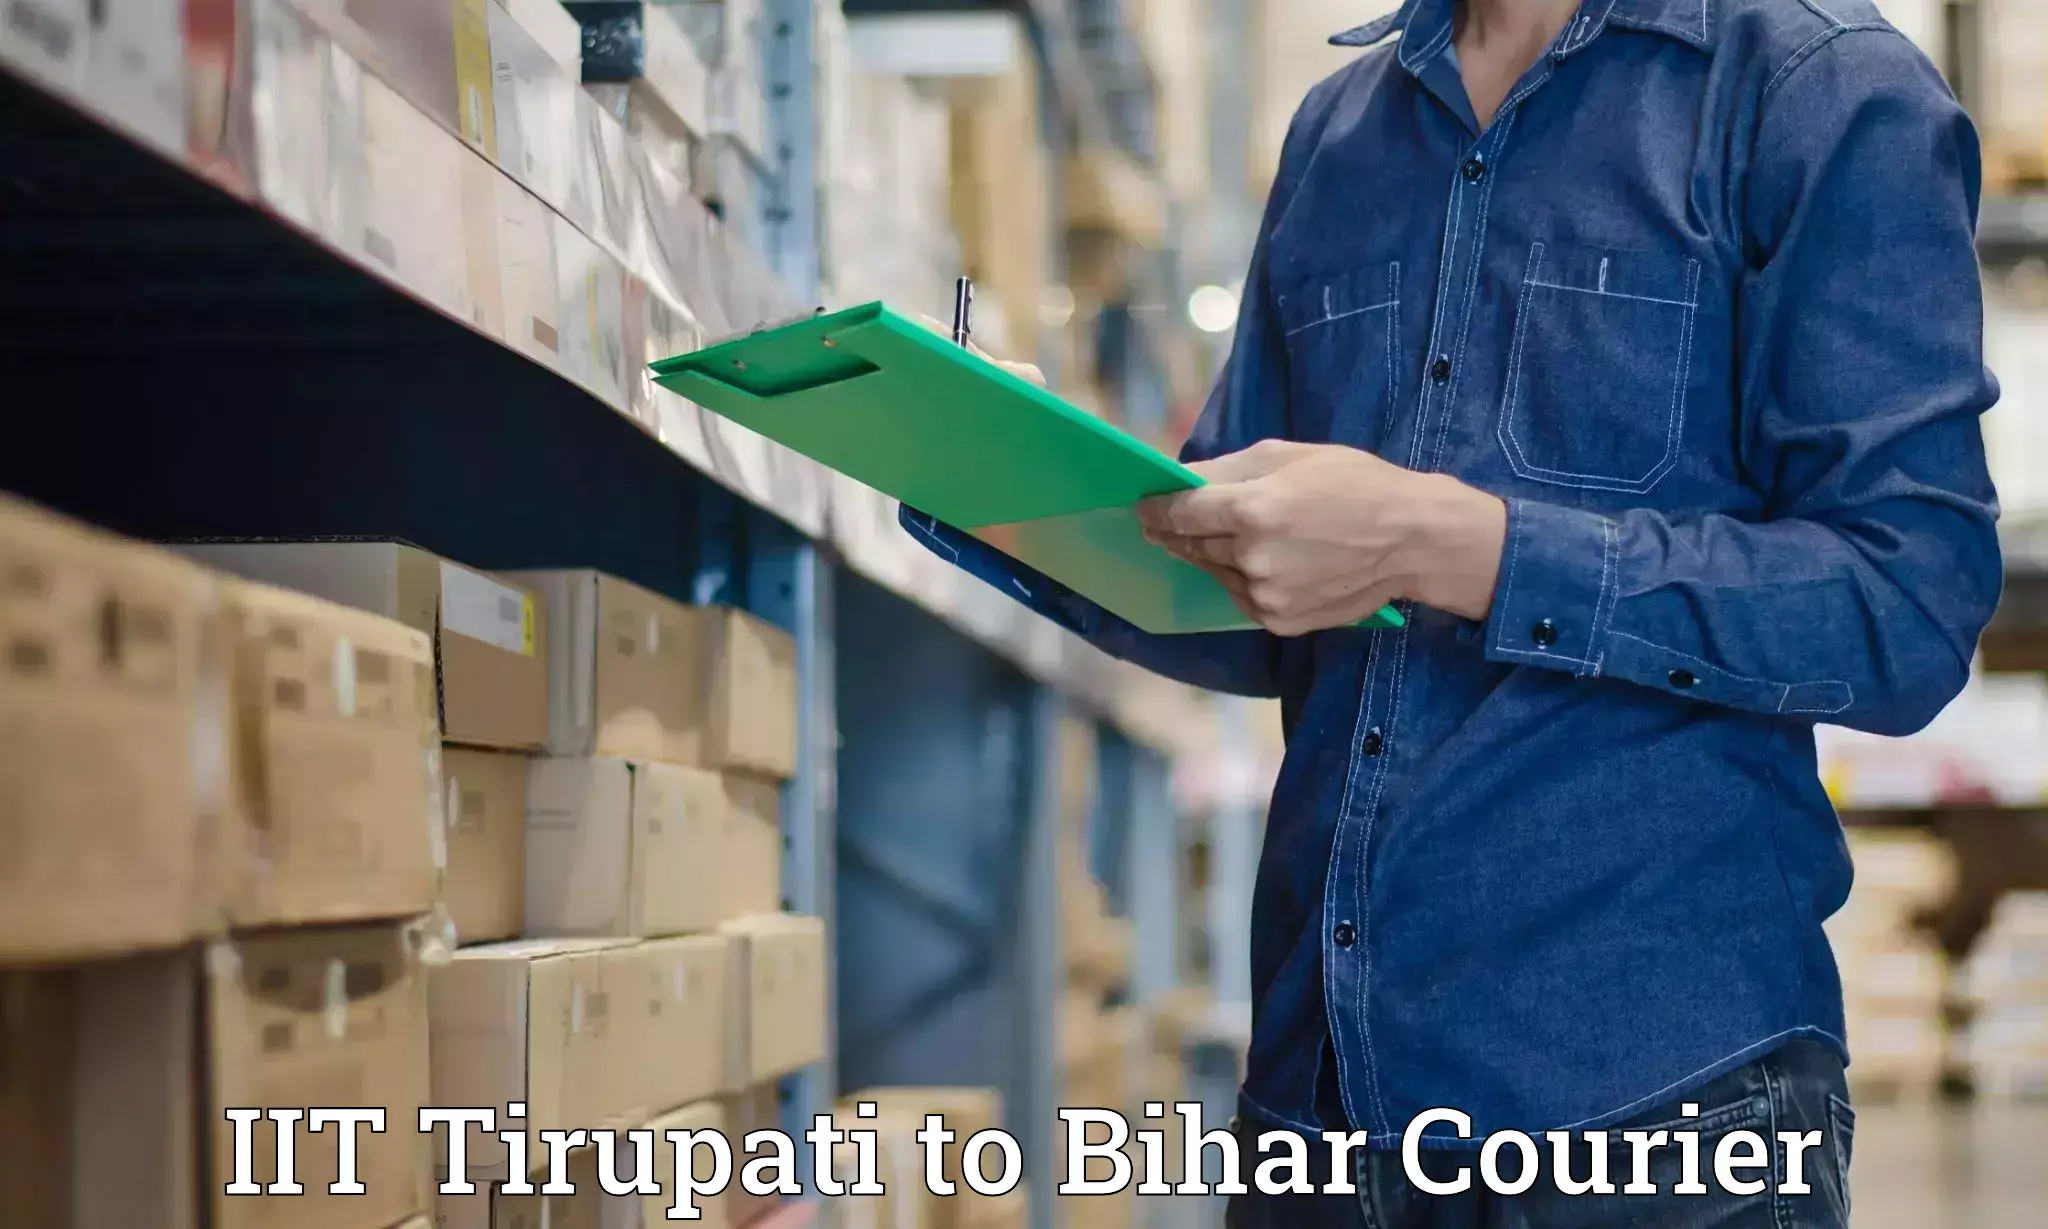 Express courier facilities IIT Tirupati to Bihar